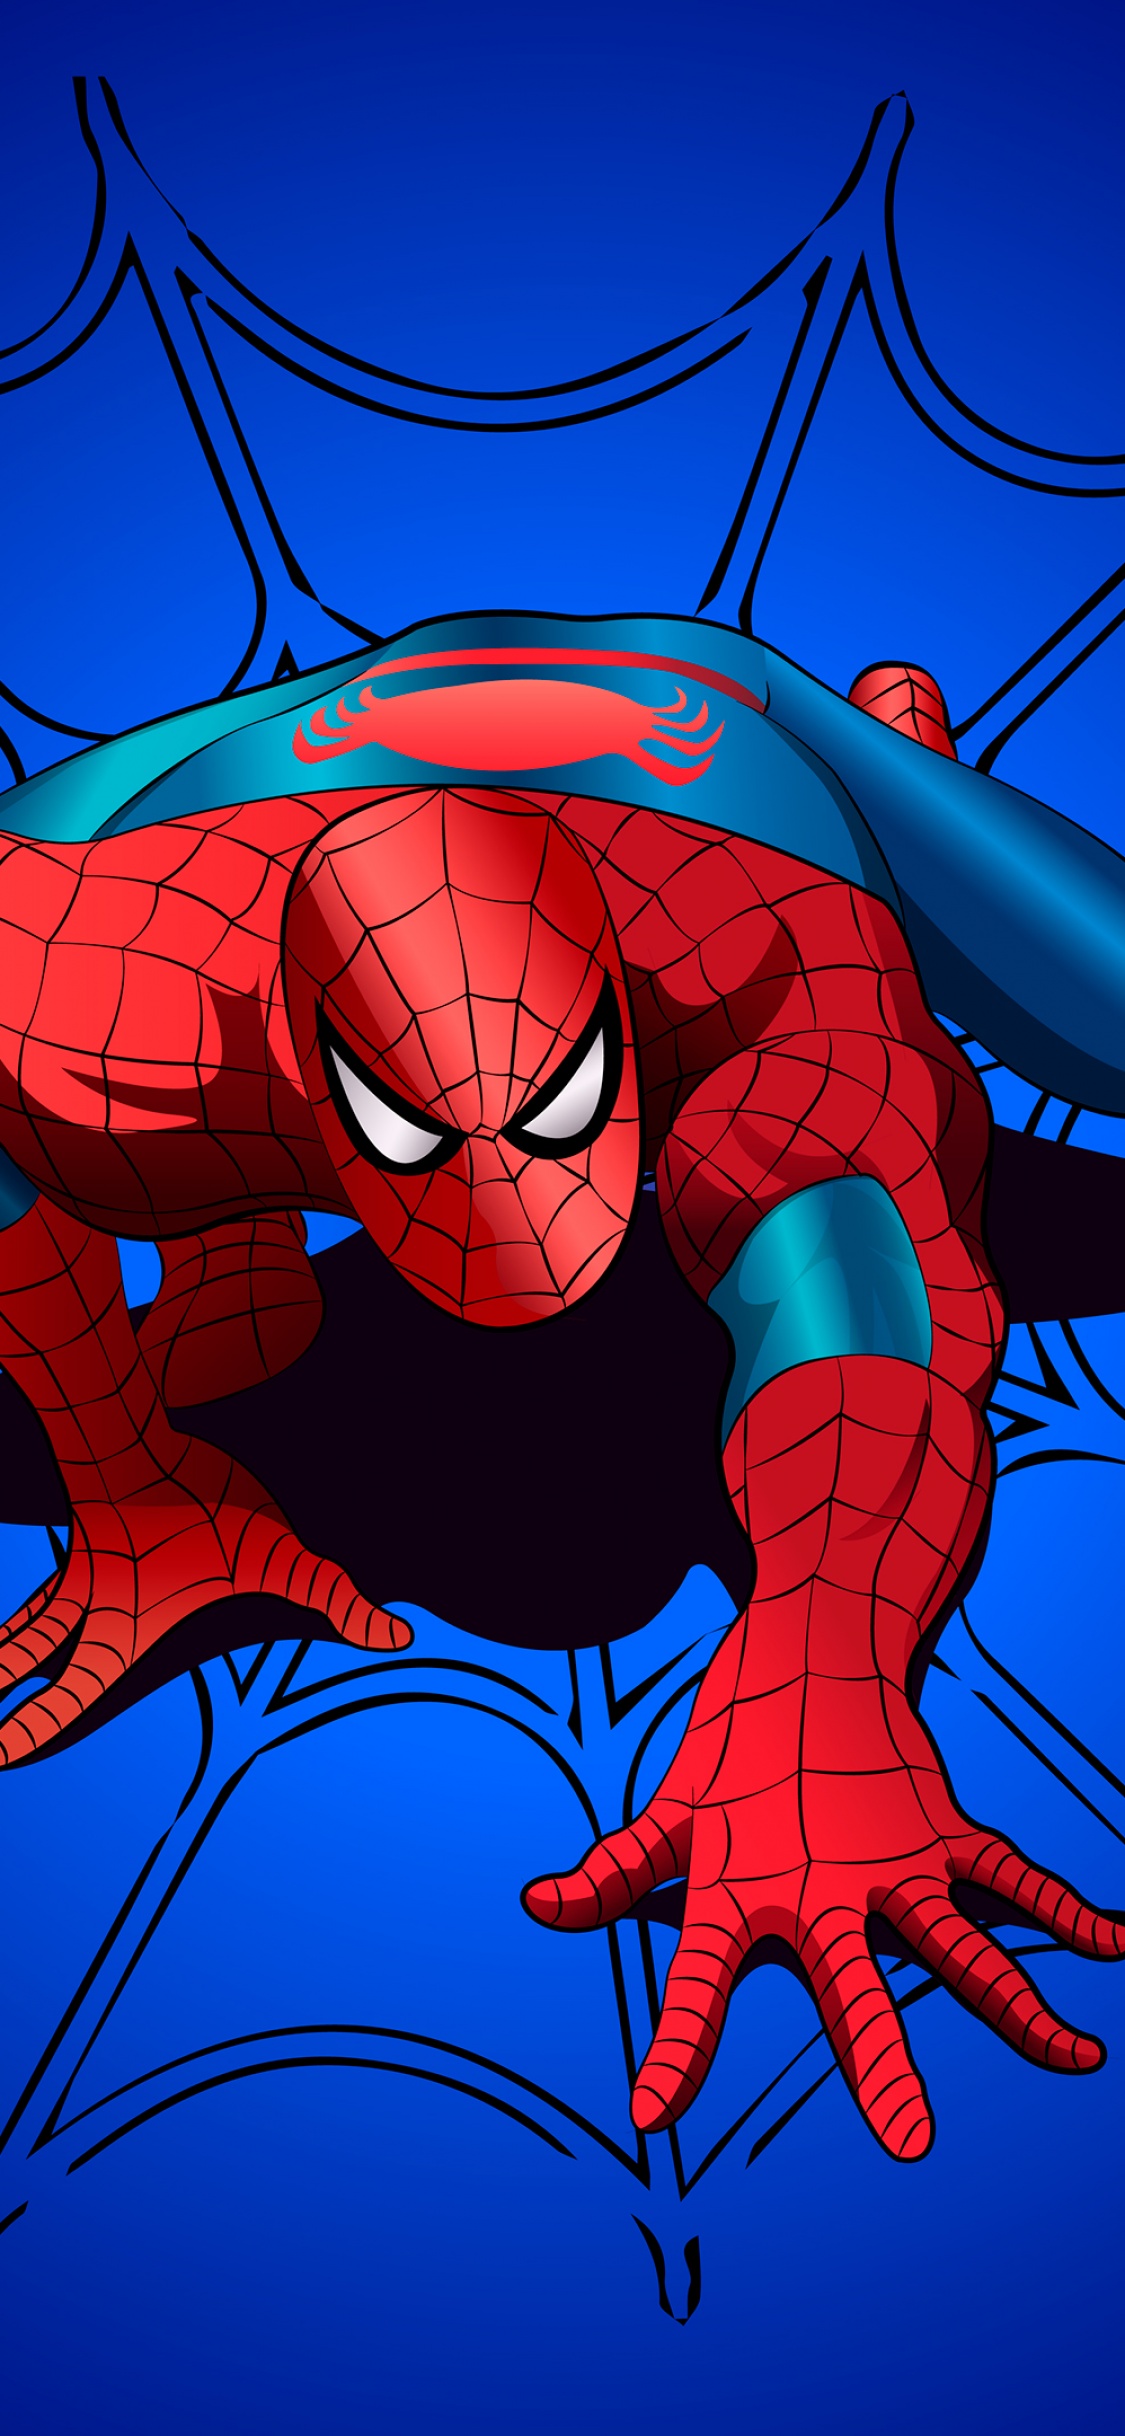 Spider-Man Wallpaper 4K, Blue background, Marvel Superheroes, Graphics